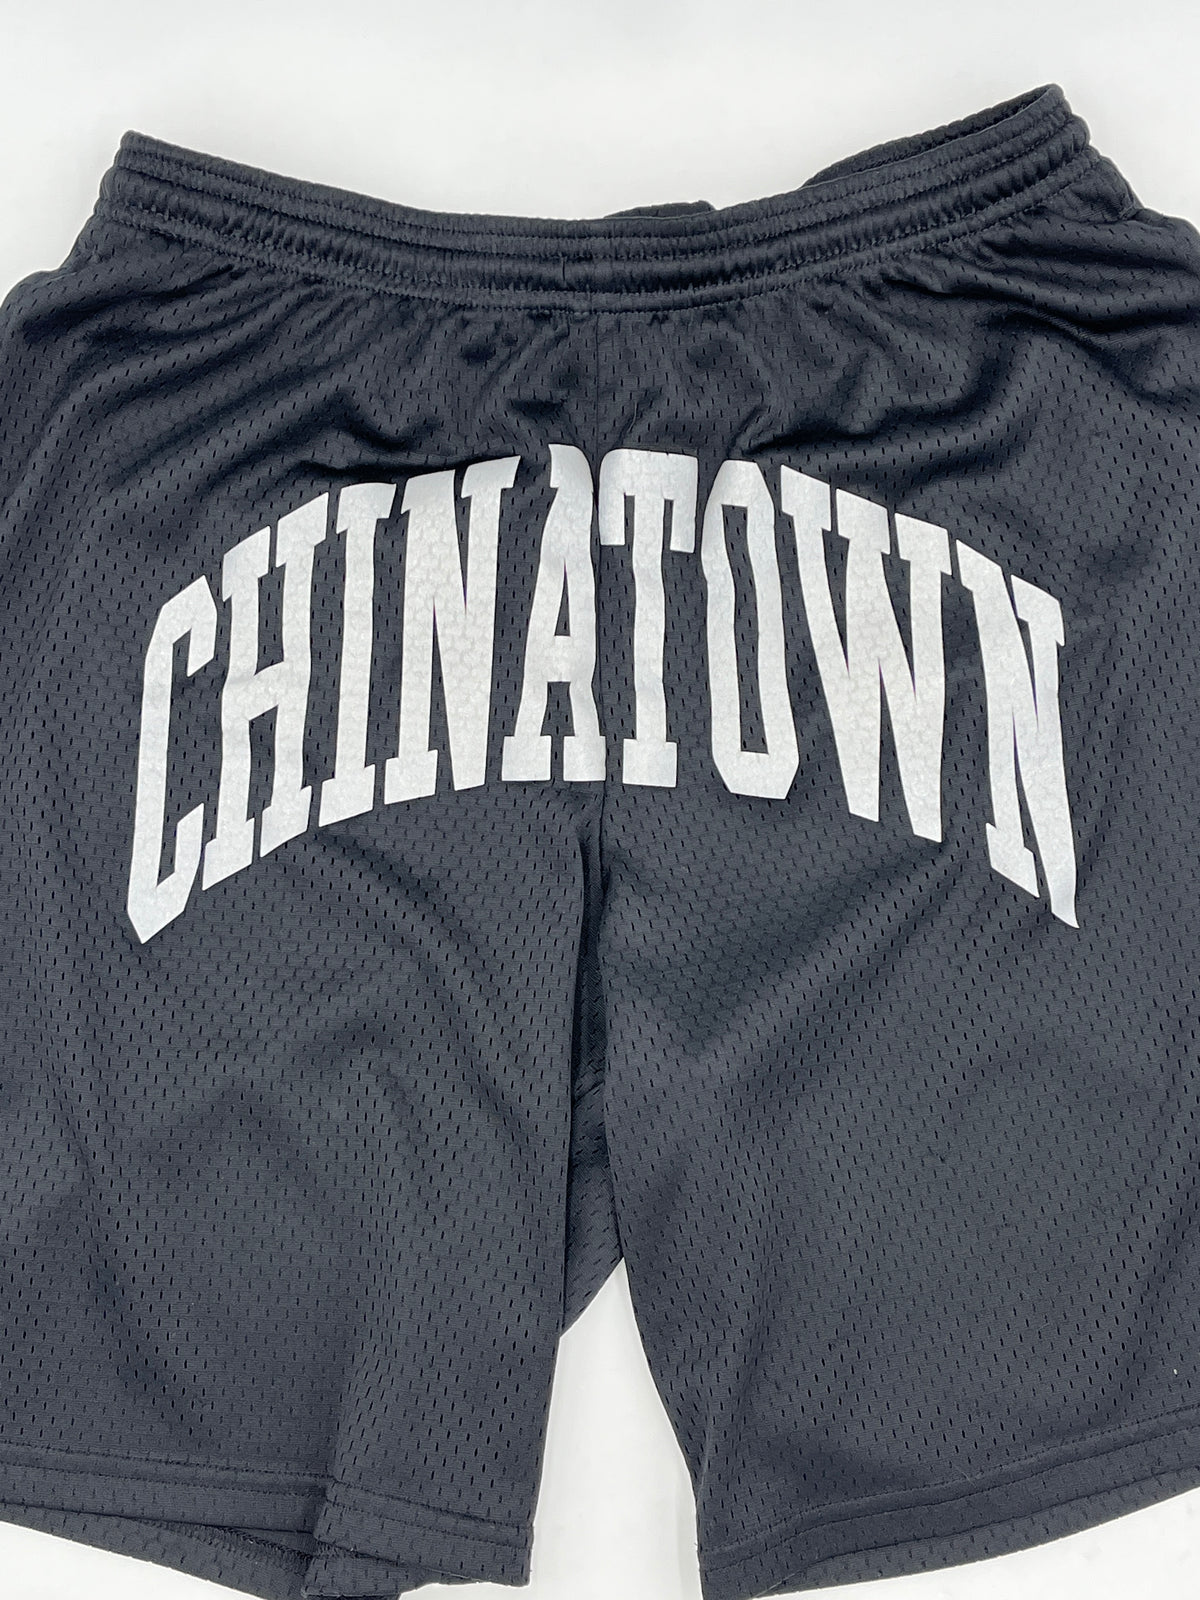 Champion Chinatown Market Crotch Shorts